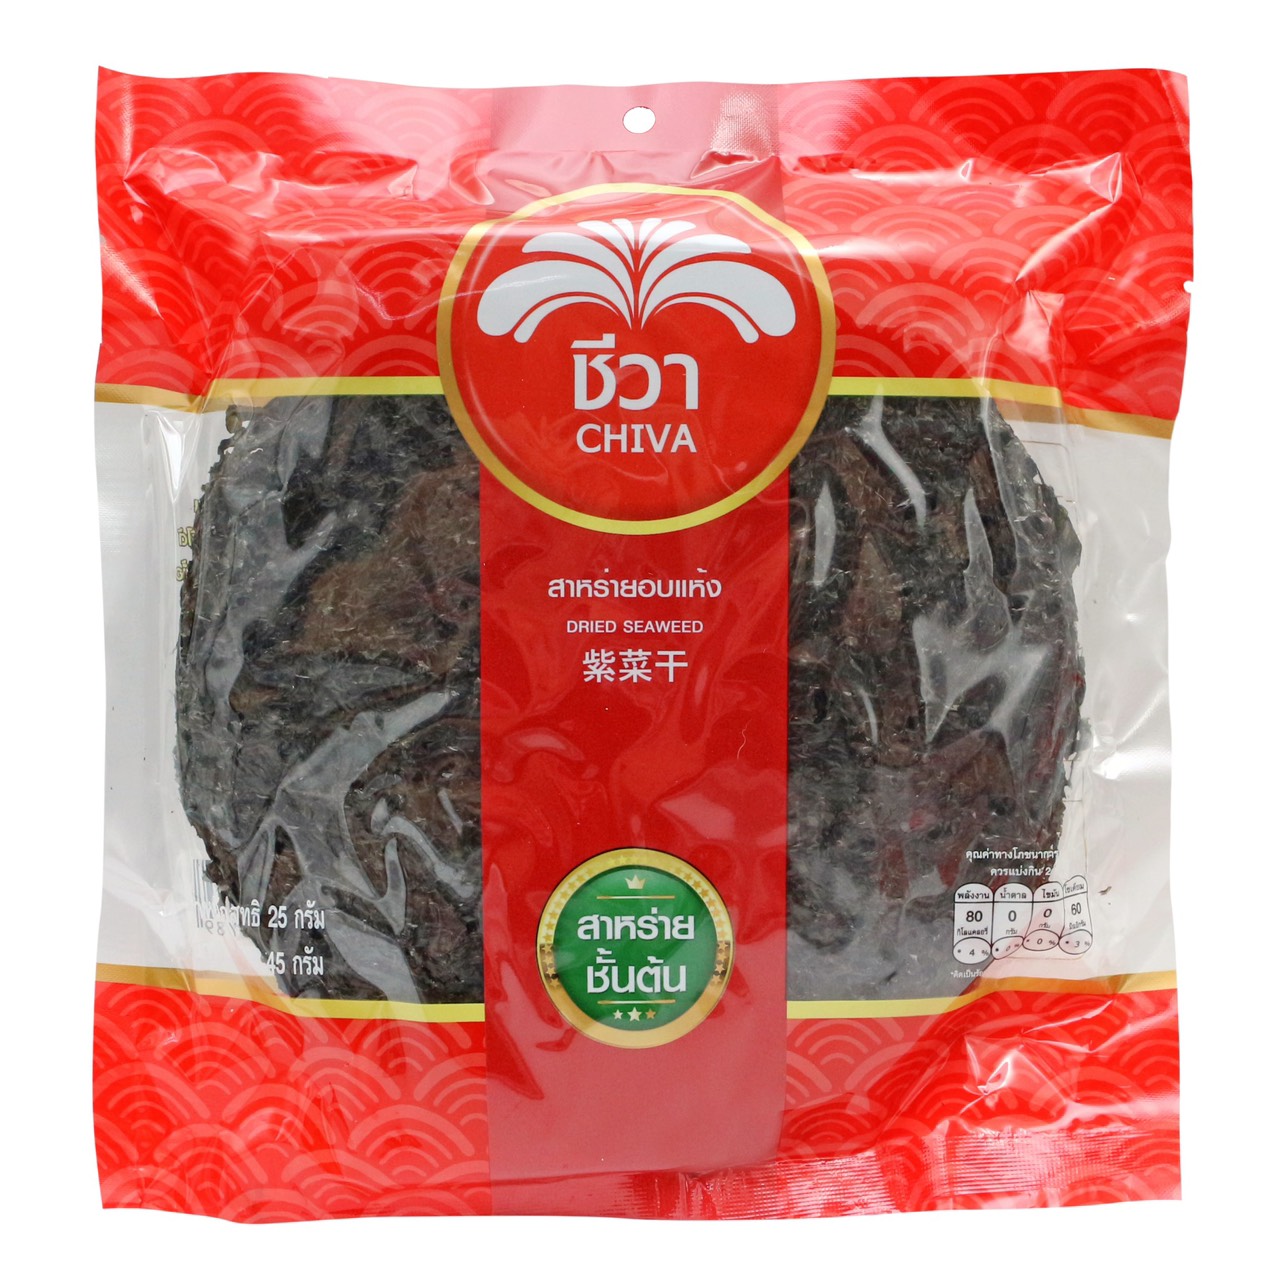 สาหร่ายแห้ง ตรา ชีวาบรรจุ ขนาด 25 กรัม (Dried Seaweed  Chiva 25 g.)